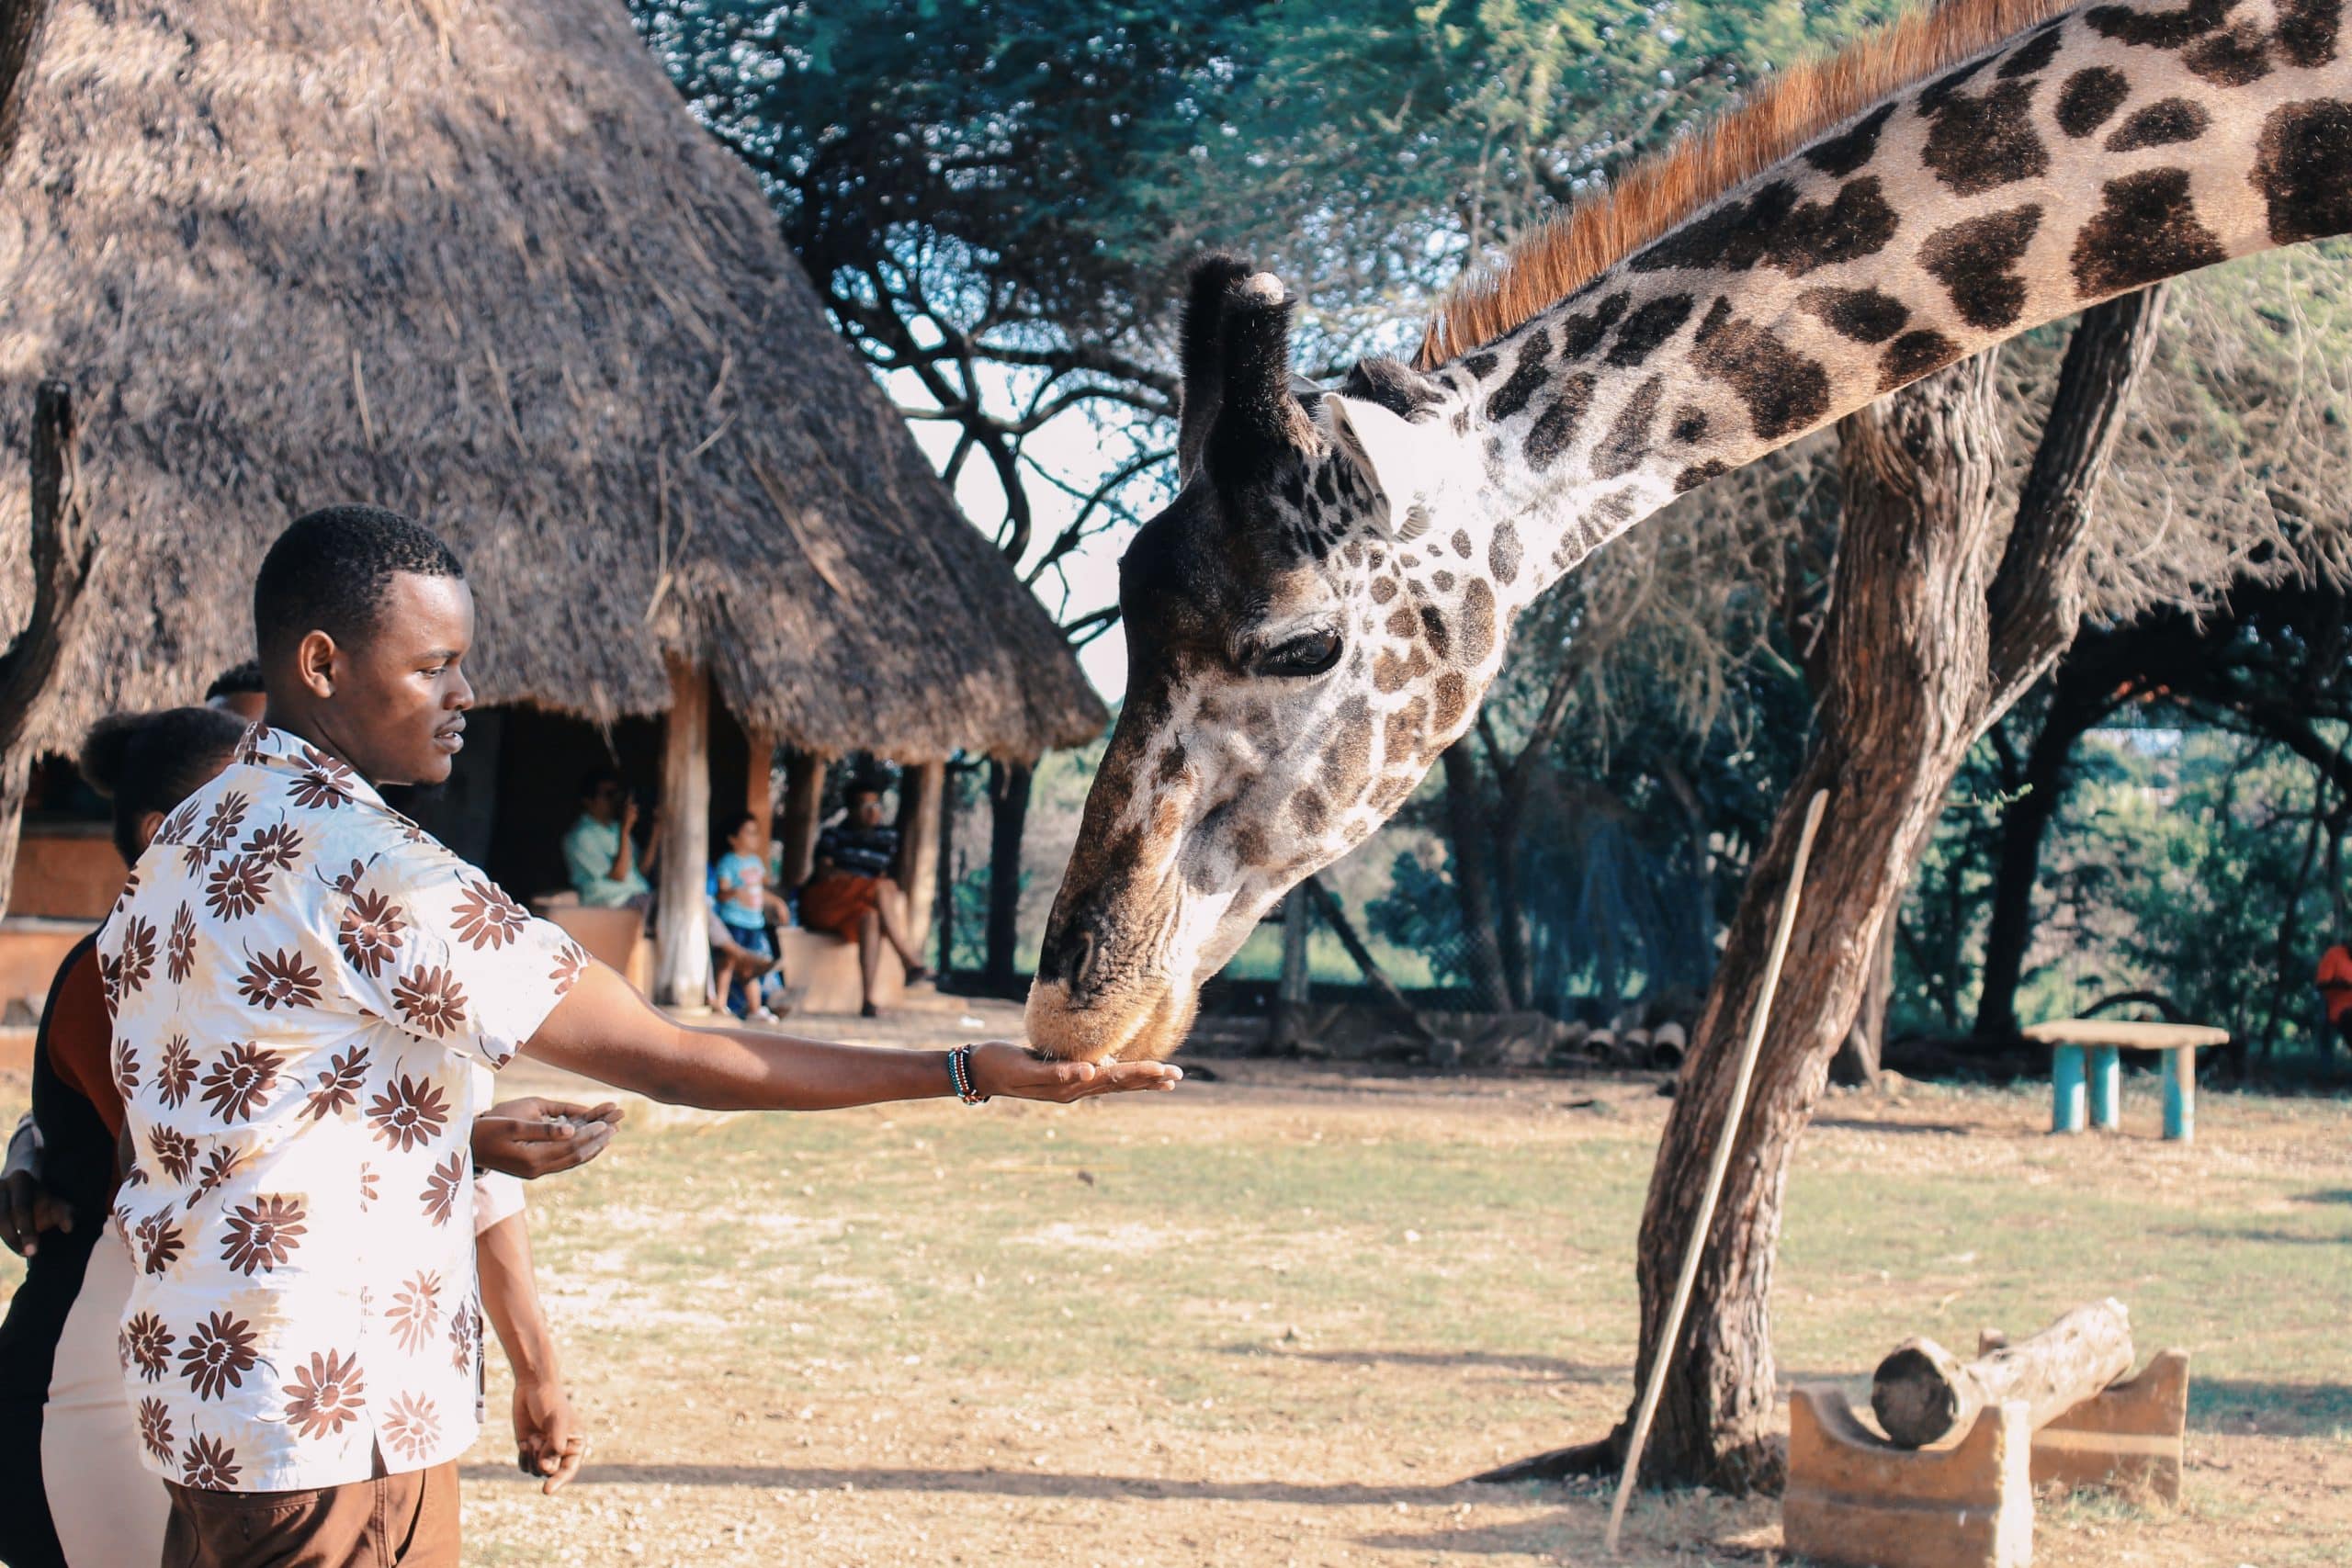 Homme caressant une girafe, habillé de manière assortie